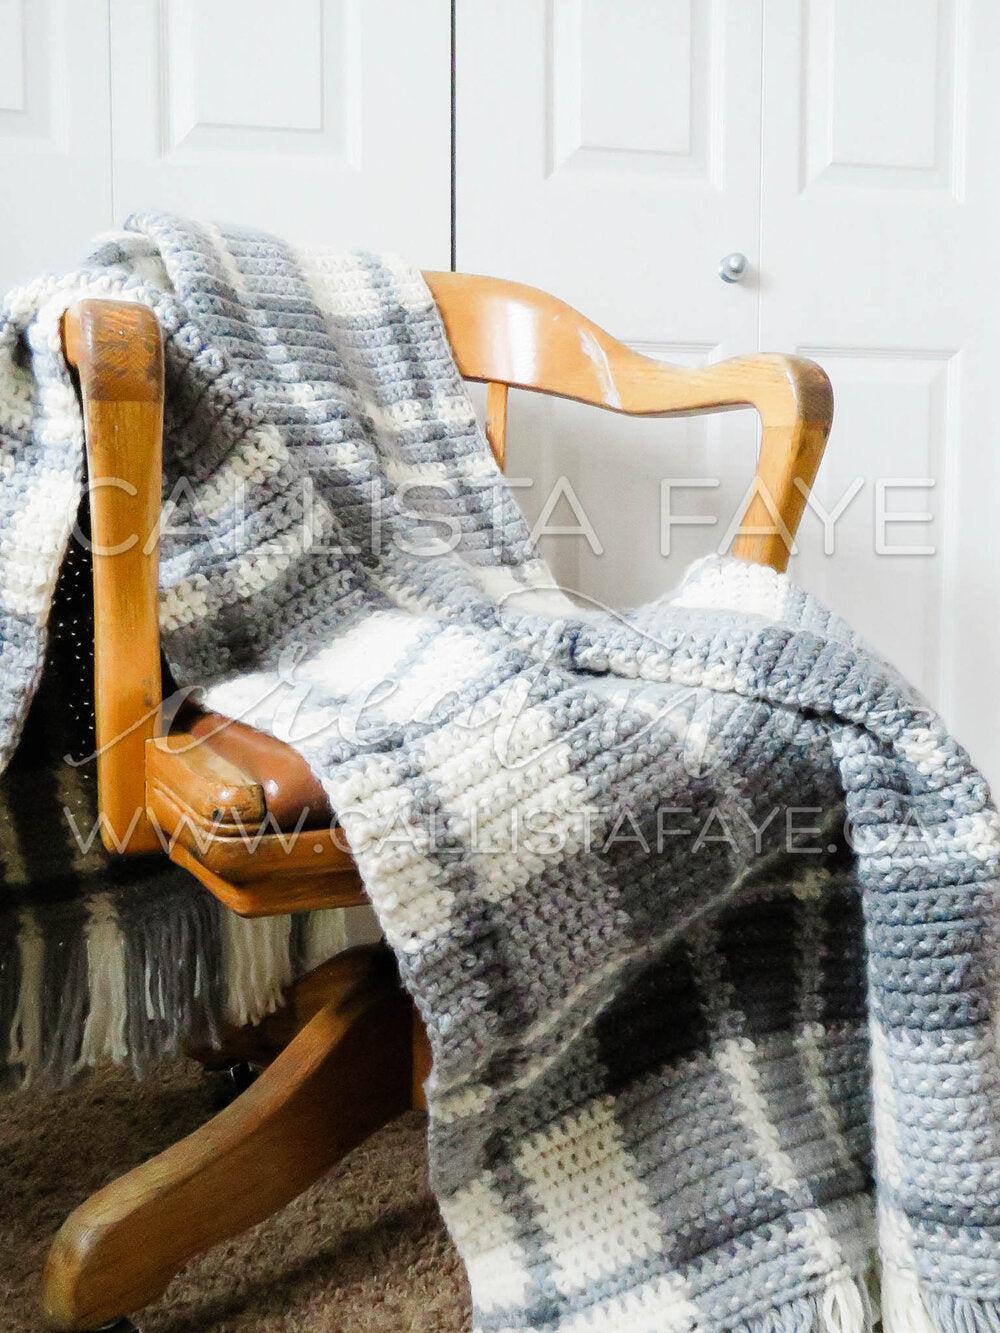 Easy Plaid Crochet Blanket PATTERN PDF Crochet Pattern callistafaye   